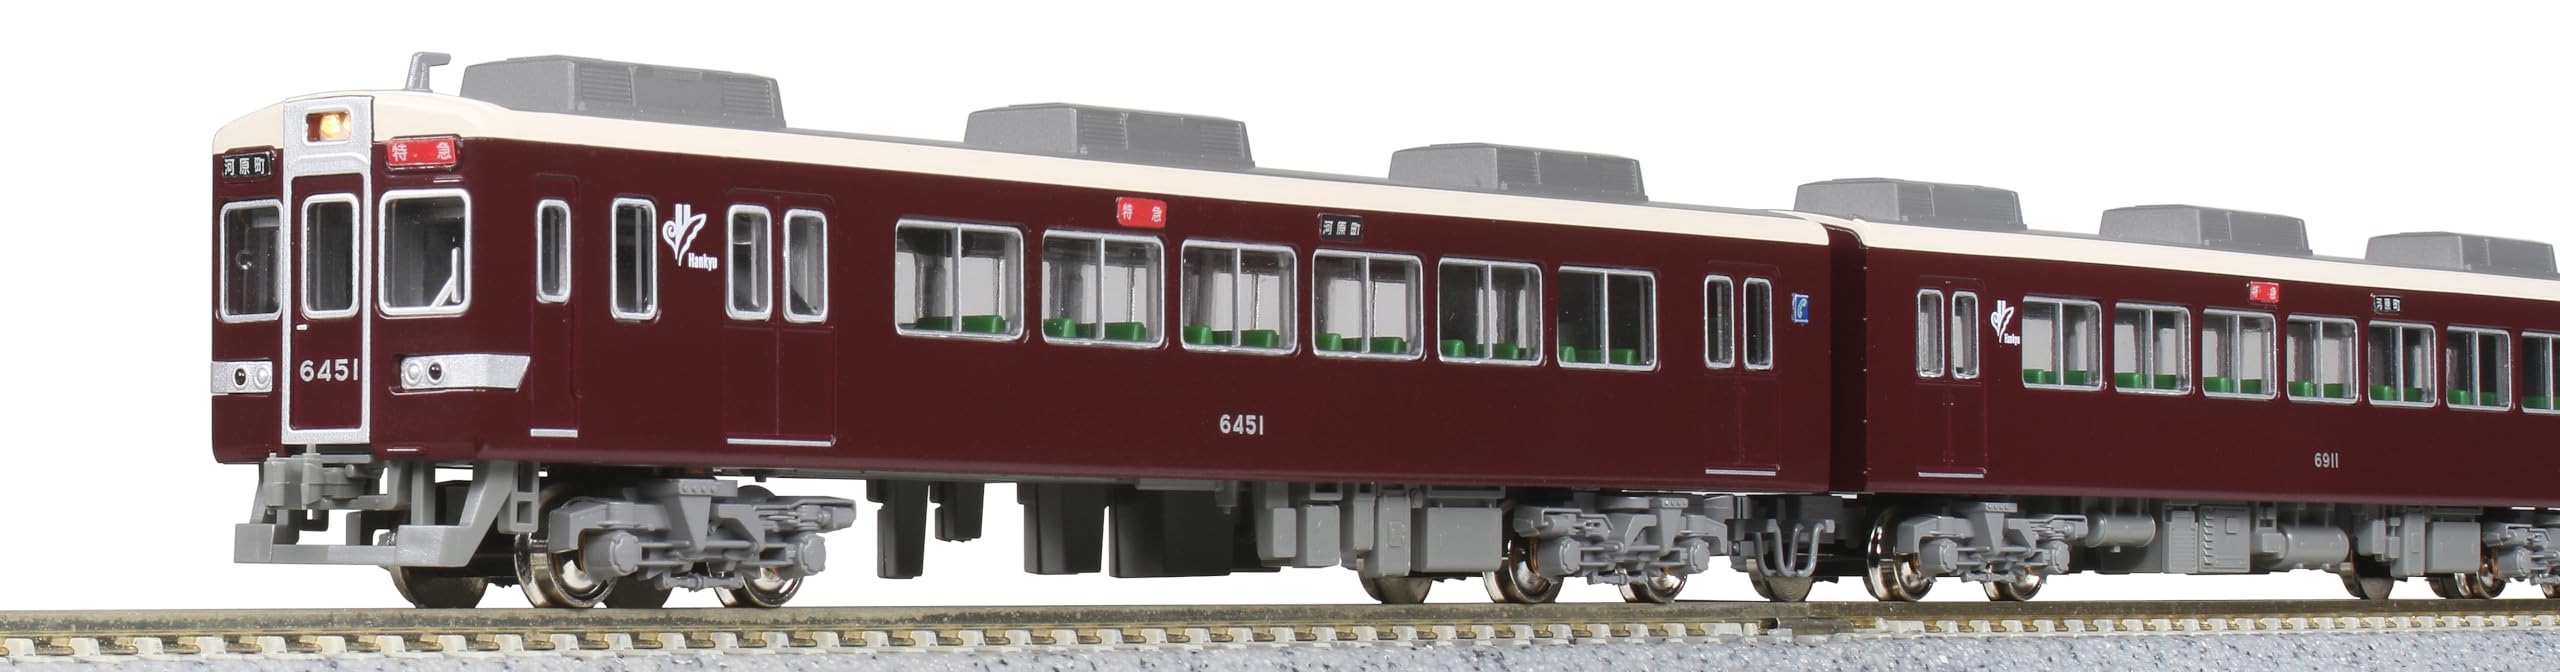 Kato N Gauge 4-Car Basic Set Série 6300 Petite fenêtre 10-1825 Train miniature